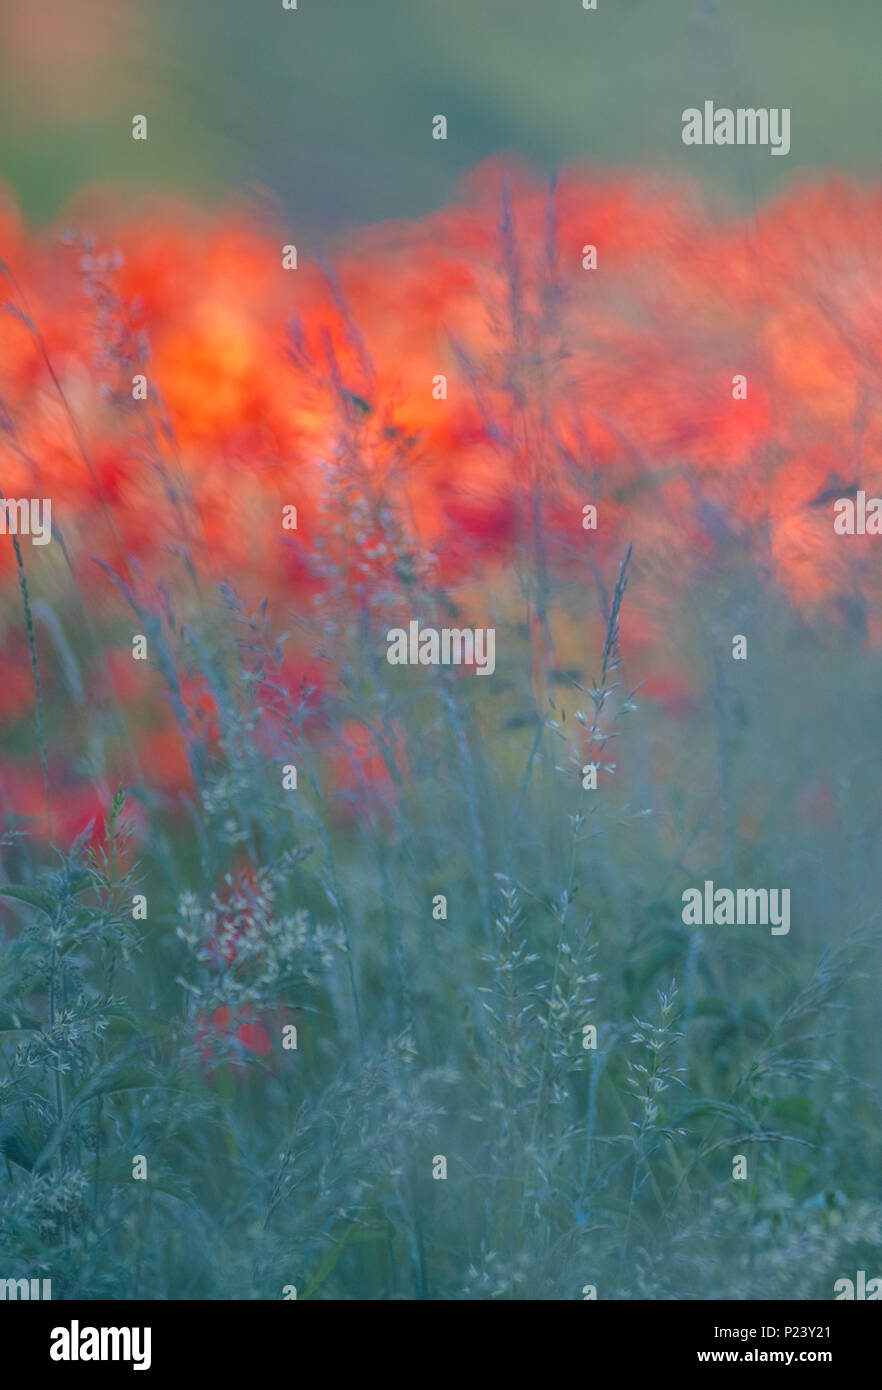 Des problèmes de mise au point des images de coquelicots rouges colorés pour un Monet simular peinture impressionniste. Banque D'Images